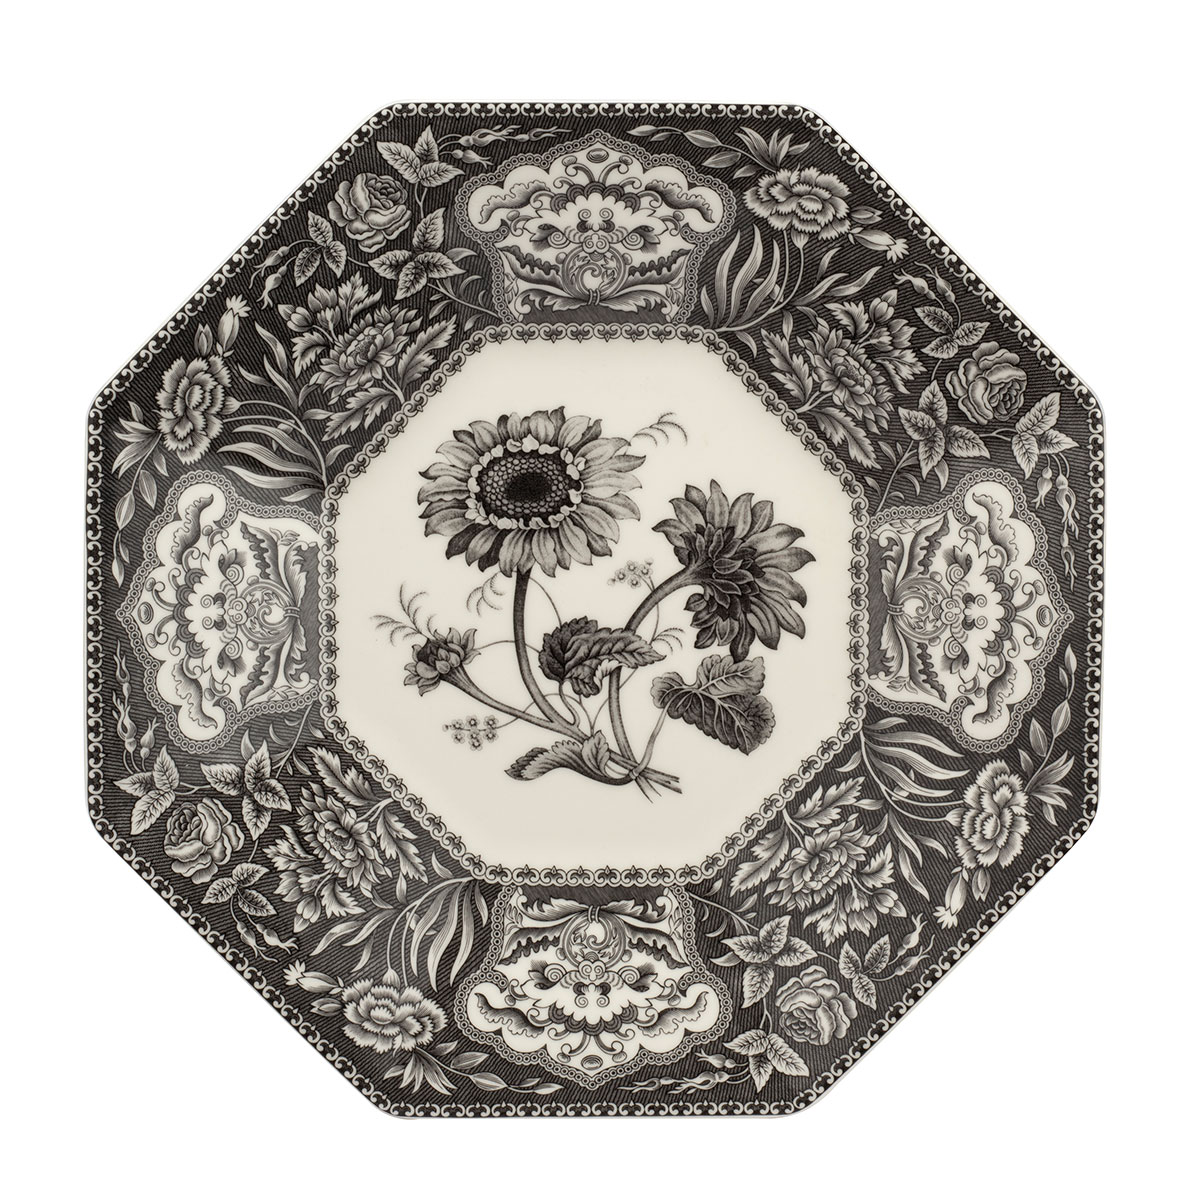 Spode Heritage Octagonal Platter, Floral